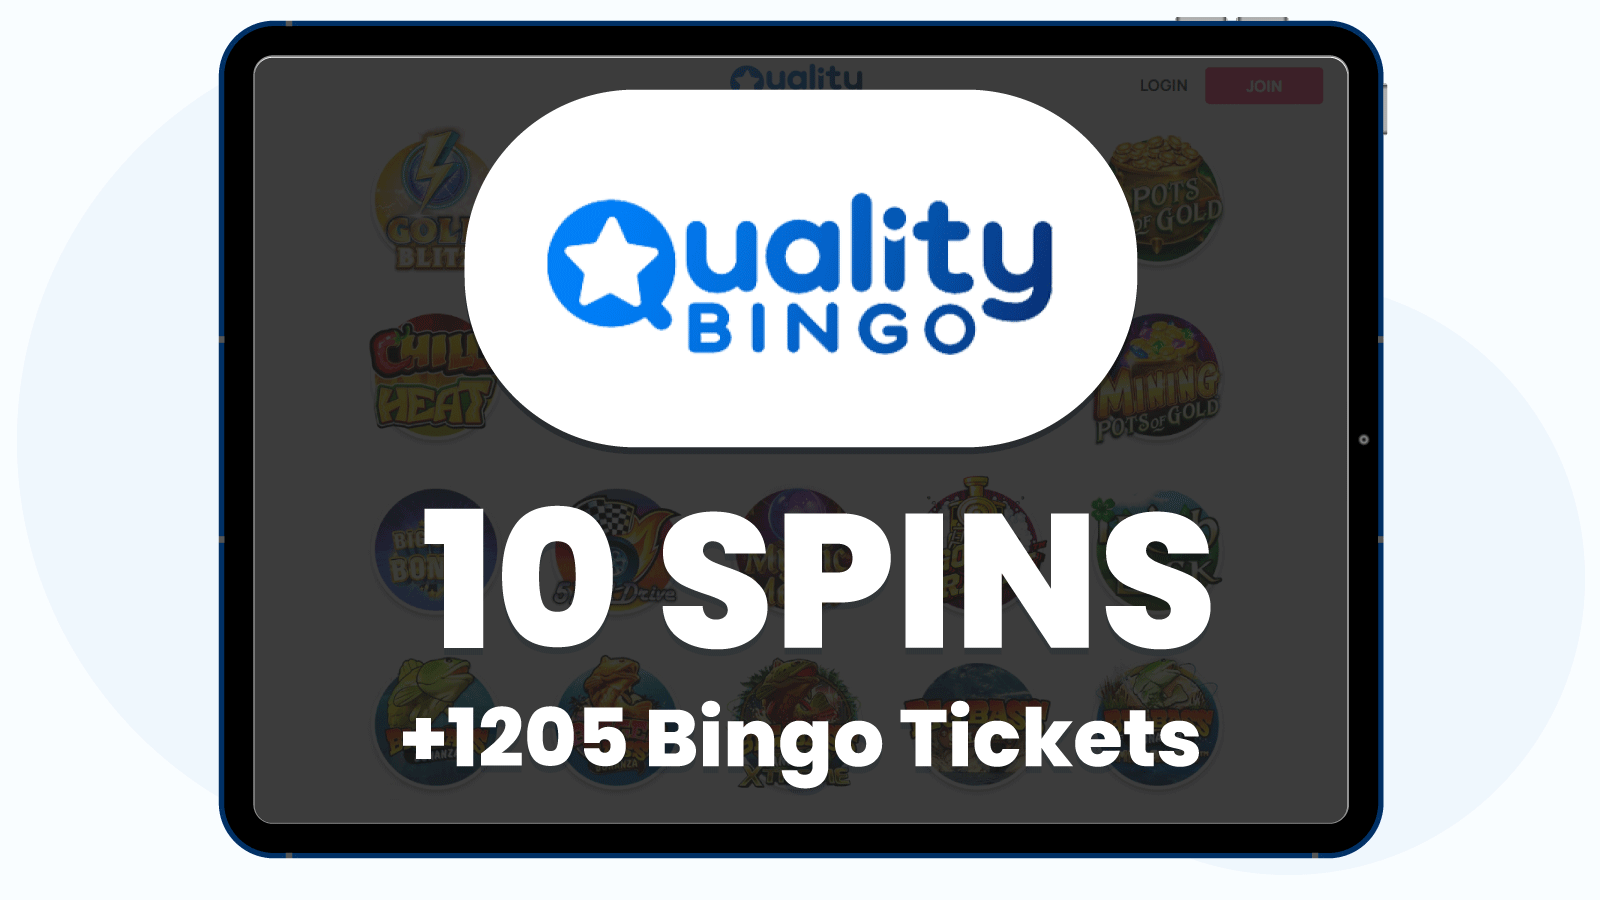 Deposit £5 Get 1205 Bingo Tickets + 10 Free Spins At Quality Bingo